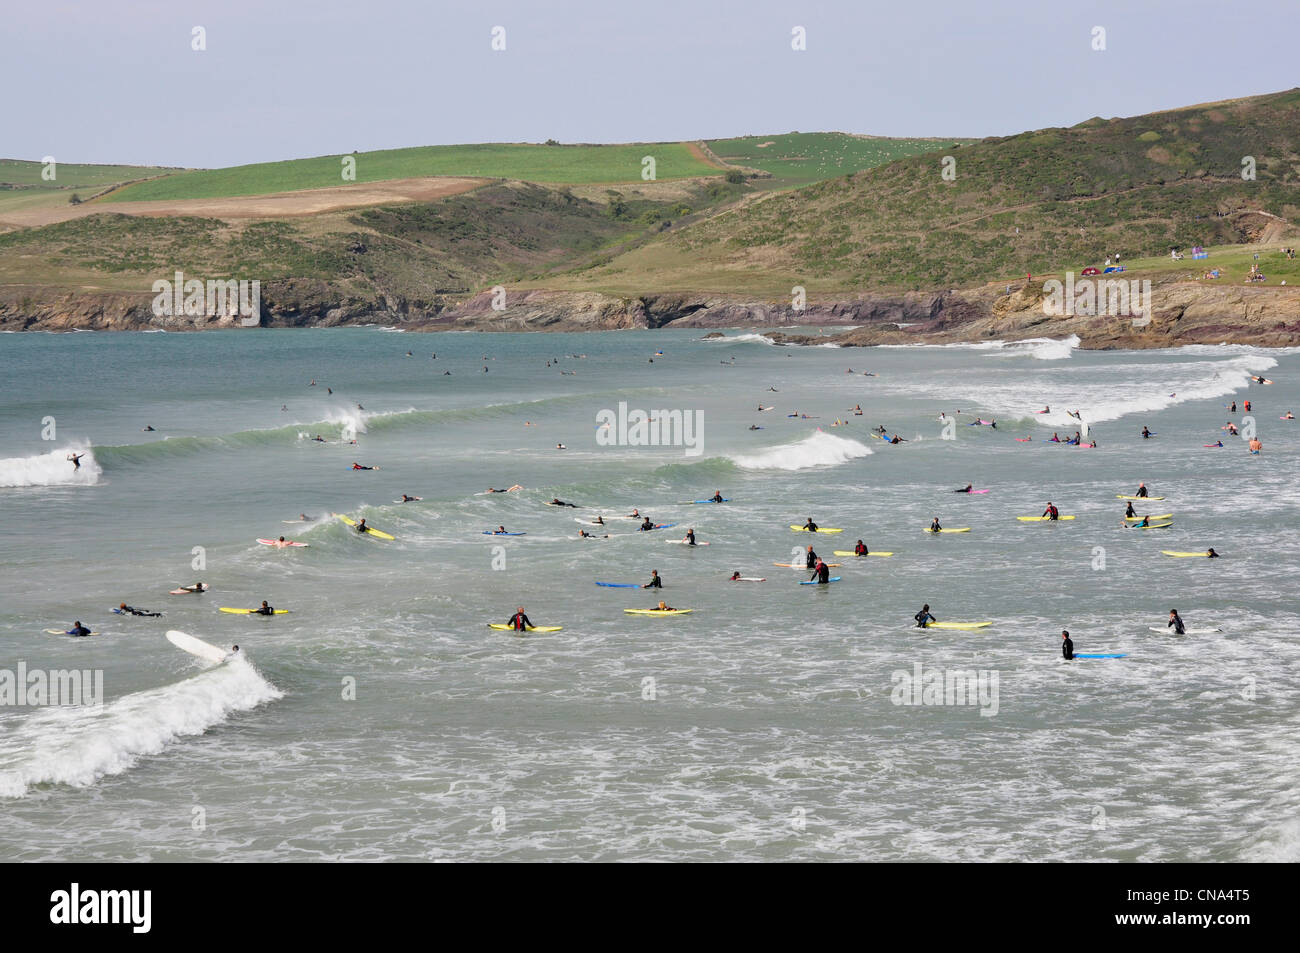 Cornwall - Hayle Bay - Surfer fangen die Brecher - Hintergrund Pentireglaze - Klippen und grüne Felder oben Stockfoto